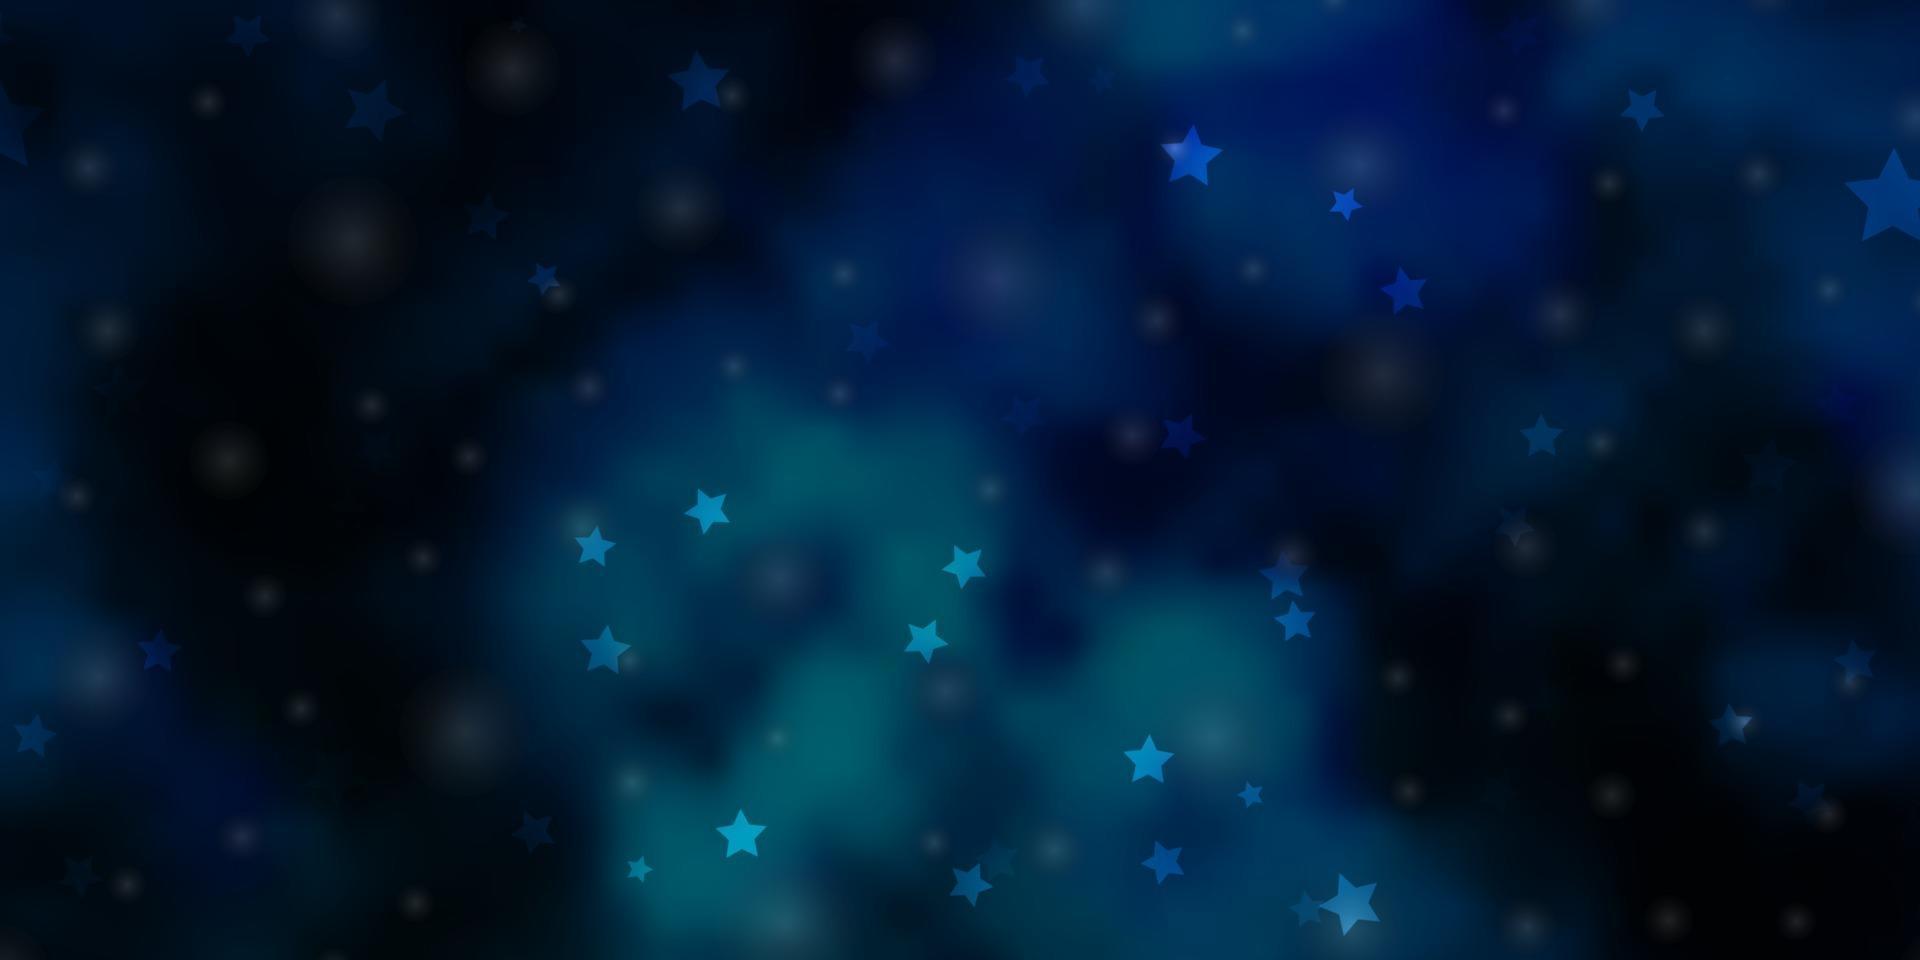 struttura di vettore blu chiaro con bellissime stelle.